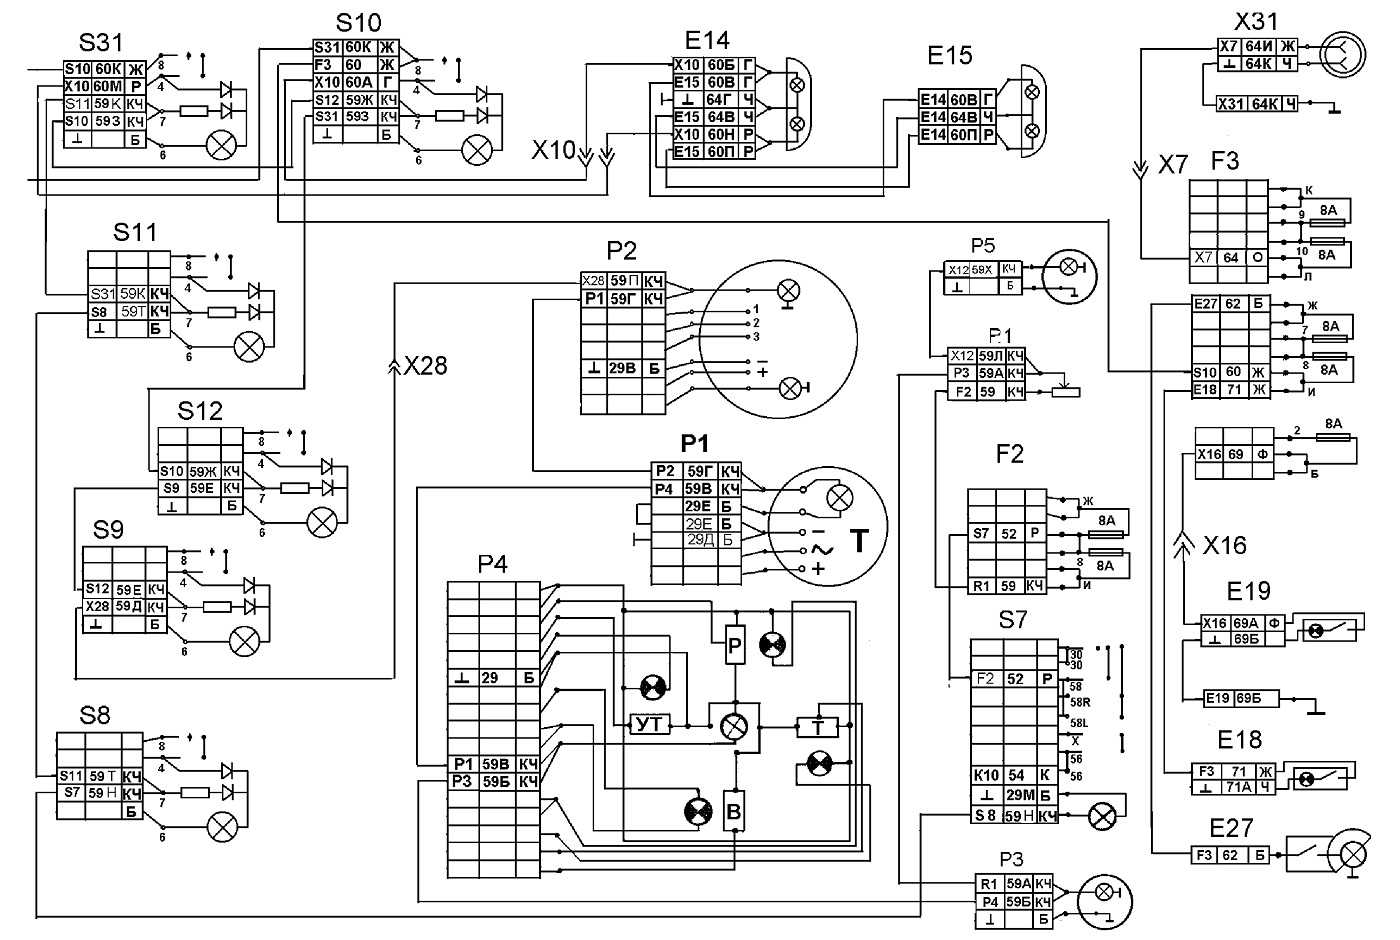 Схема подключения генератора камаз: 5320, 65115, 4310, евро 2.топ